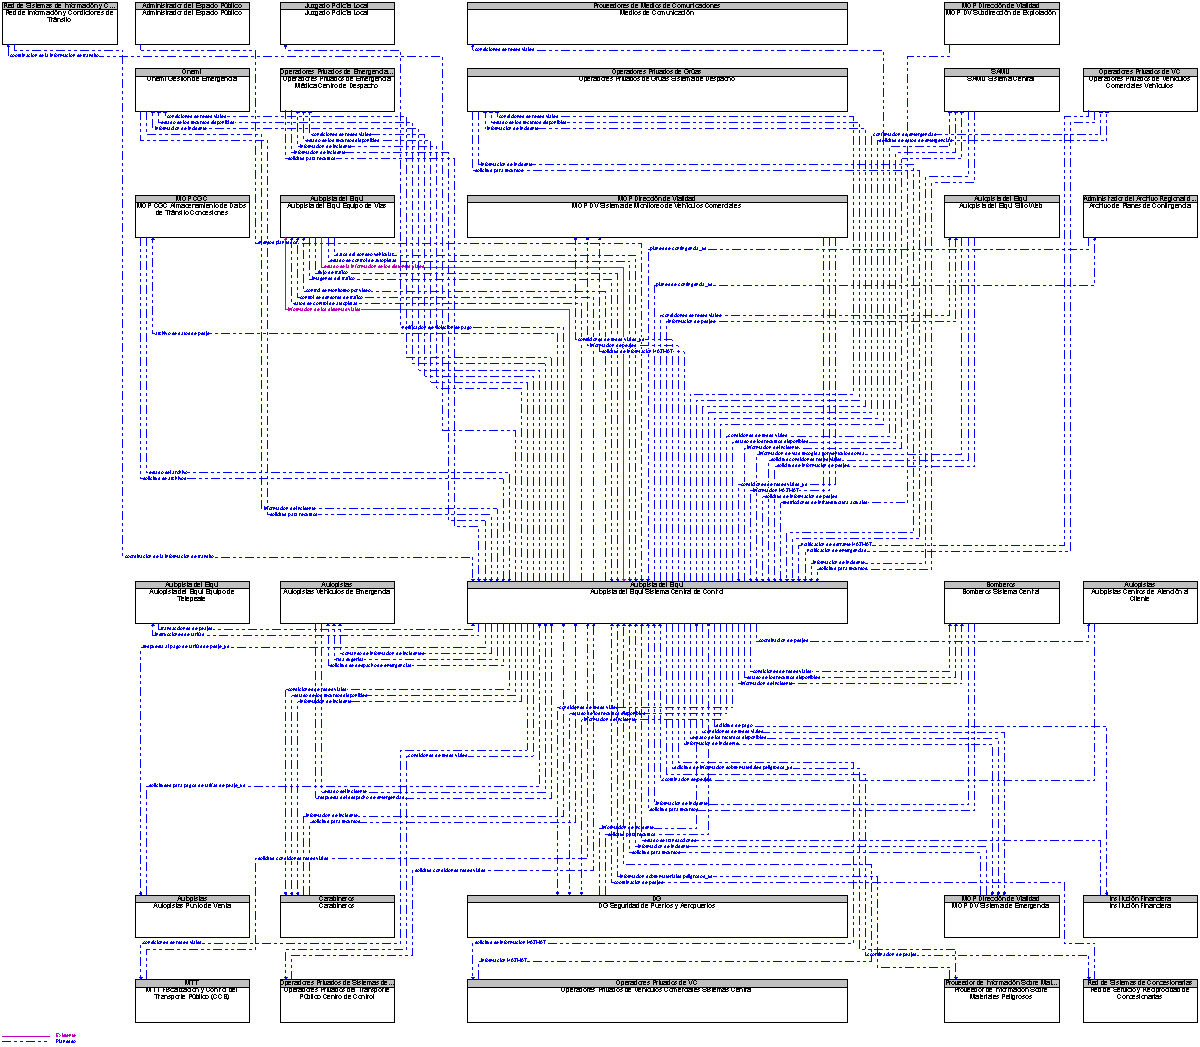 Diagrama Del Contexto por Autopista del Elqui Sistema Central de Control